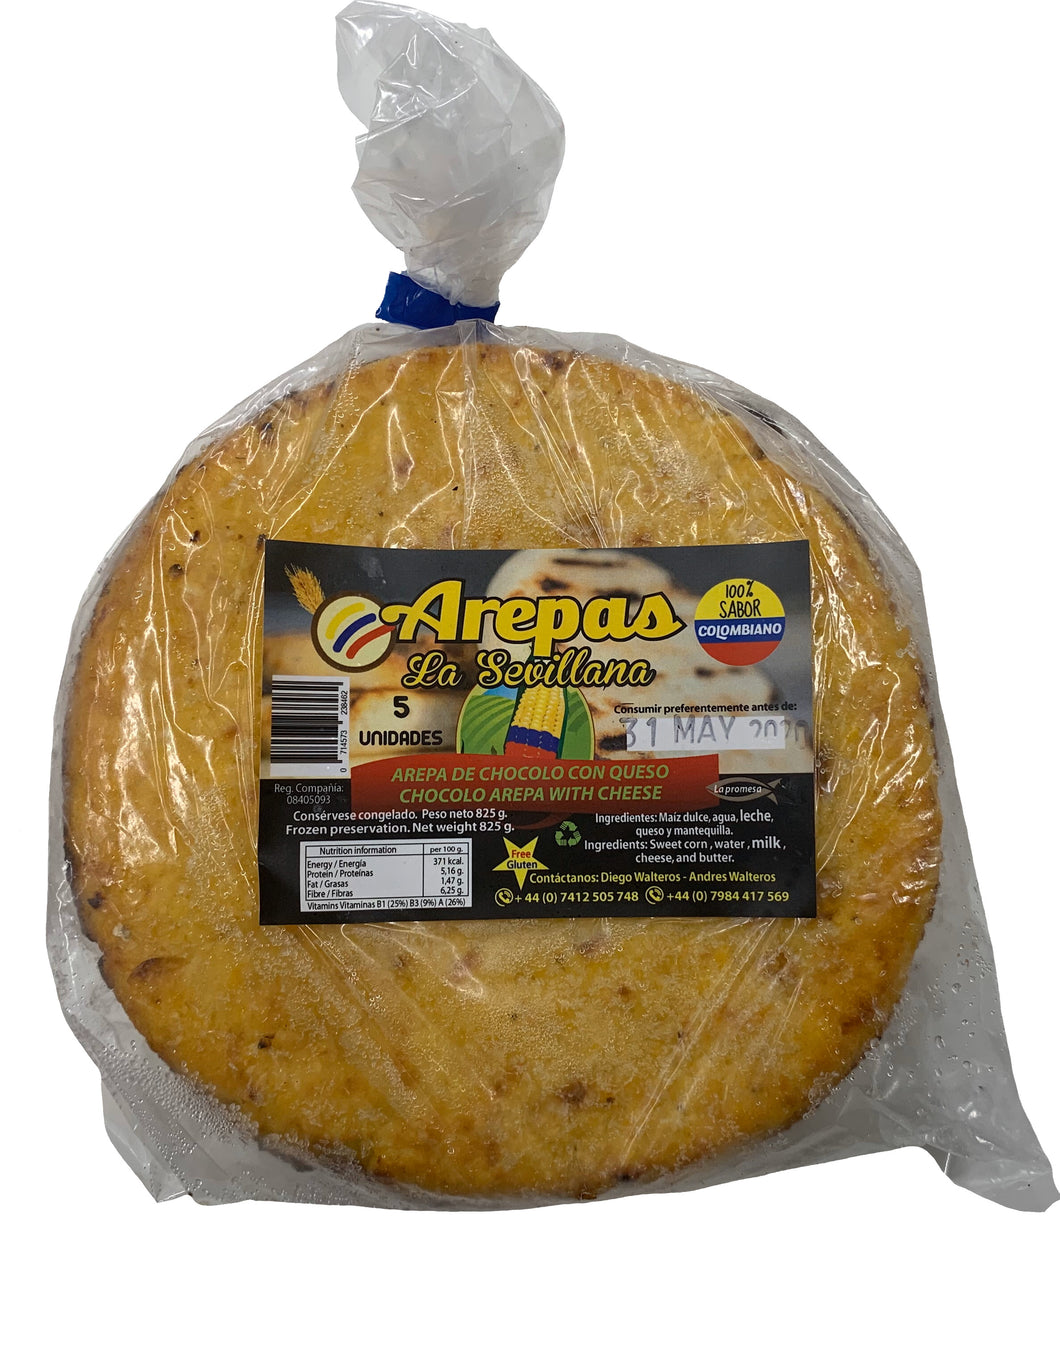 [FROZEN] La Sevillana Chocolo Arepas With Cheese - Arepas de Chocolo con Queso